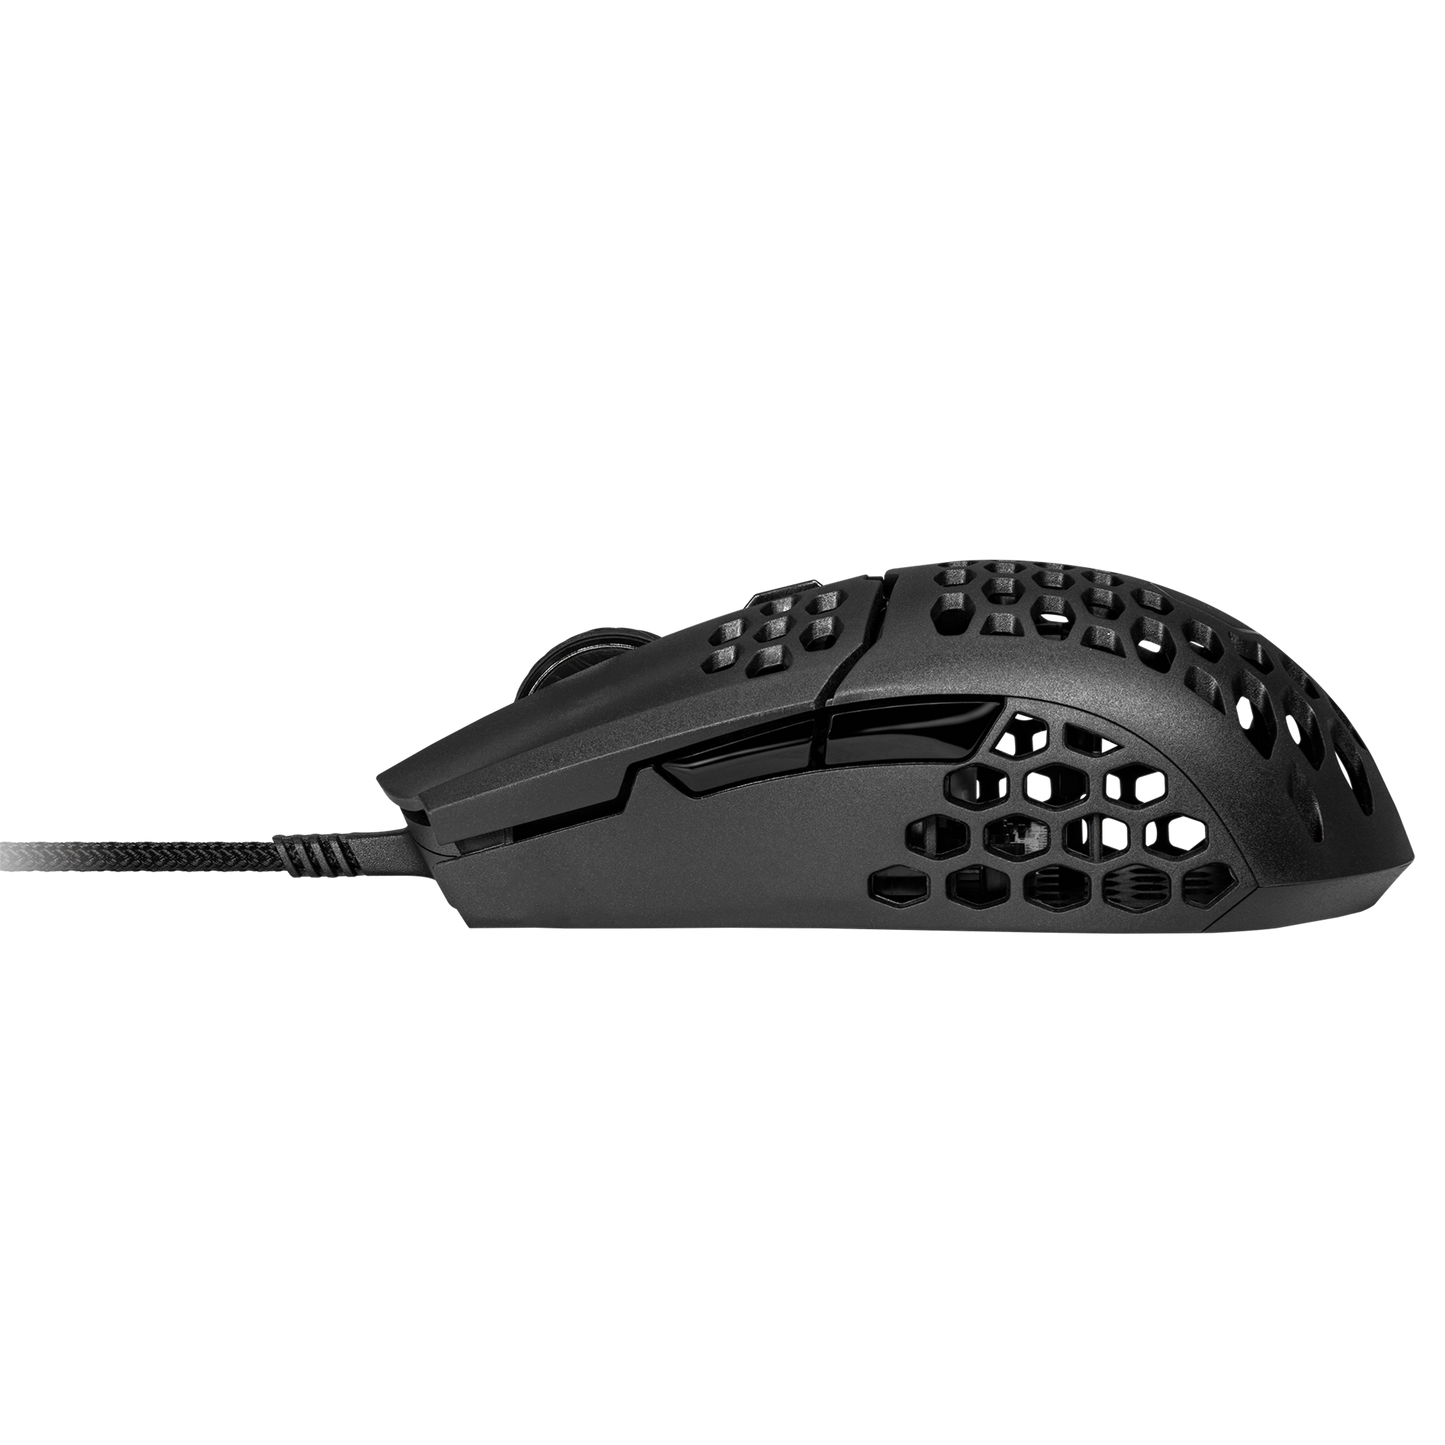 Cooler Master MM710 - Lightweight Gaming Mouse - Matte Black